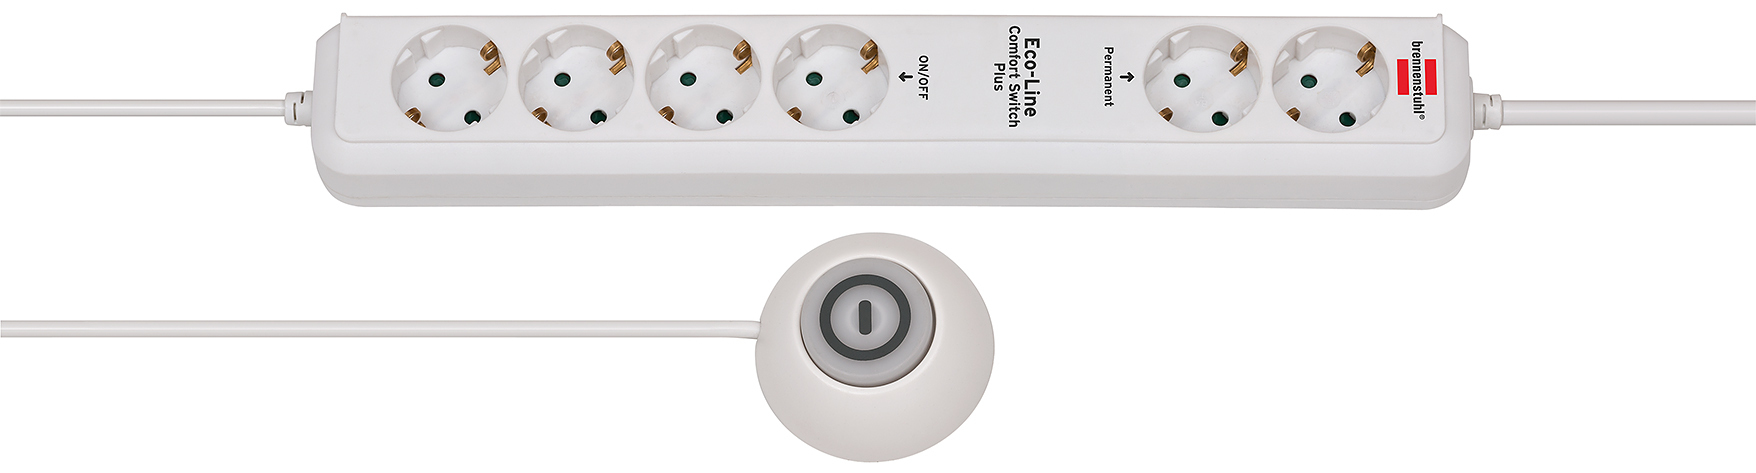 Brennenstuhl Eco-Line Comfort Switch Plus EL CSP 24 Steckdosenleiste 6-fach weiss